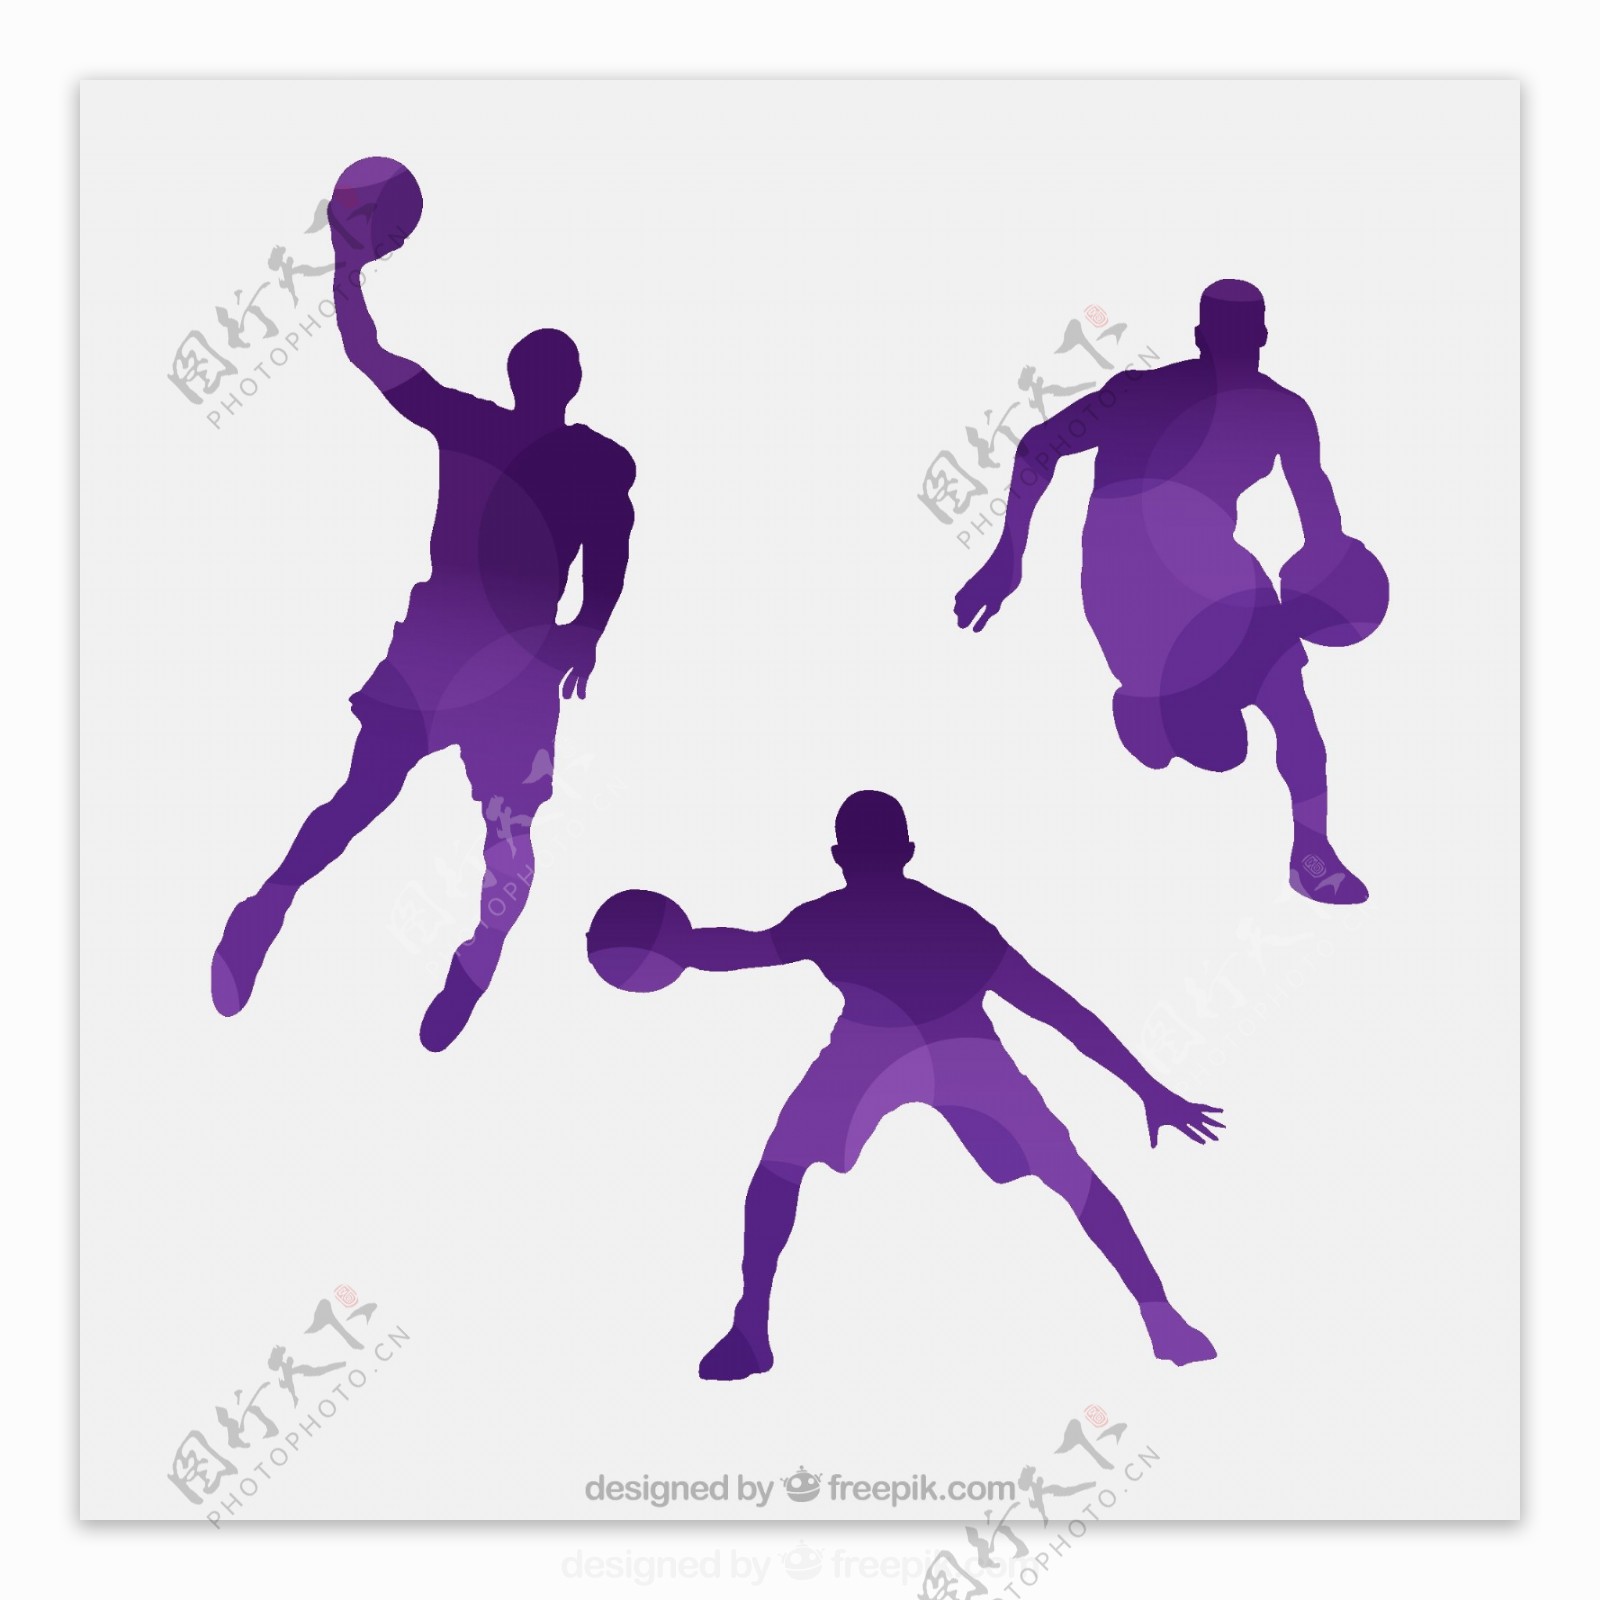 篮球男子剪影矢量图片